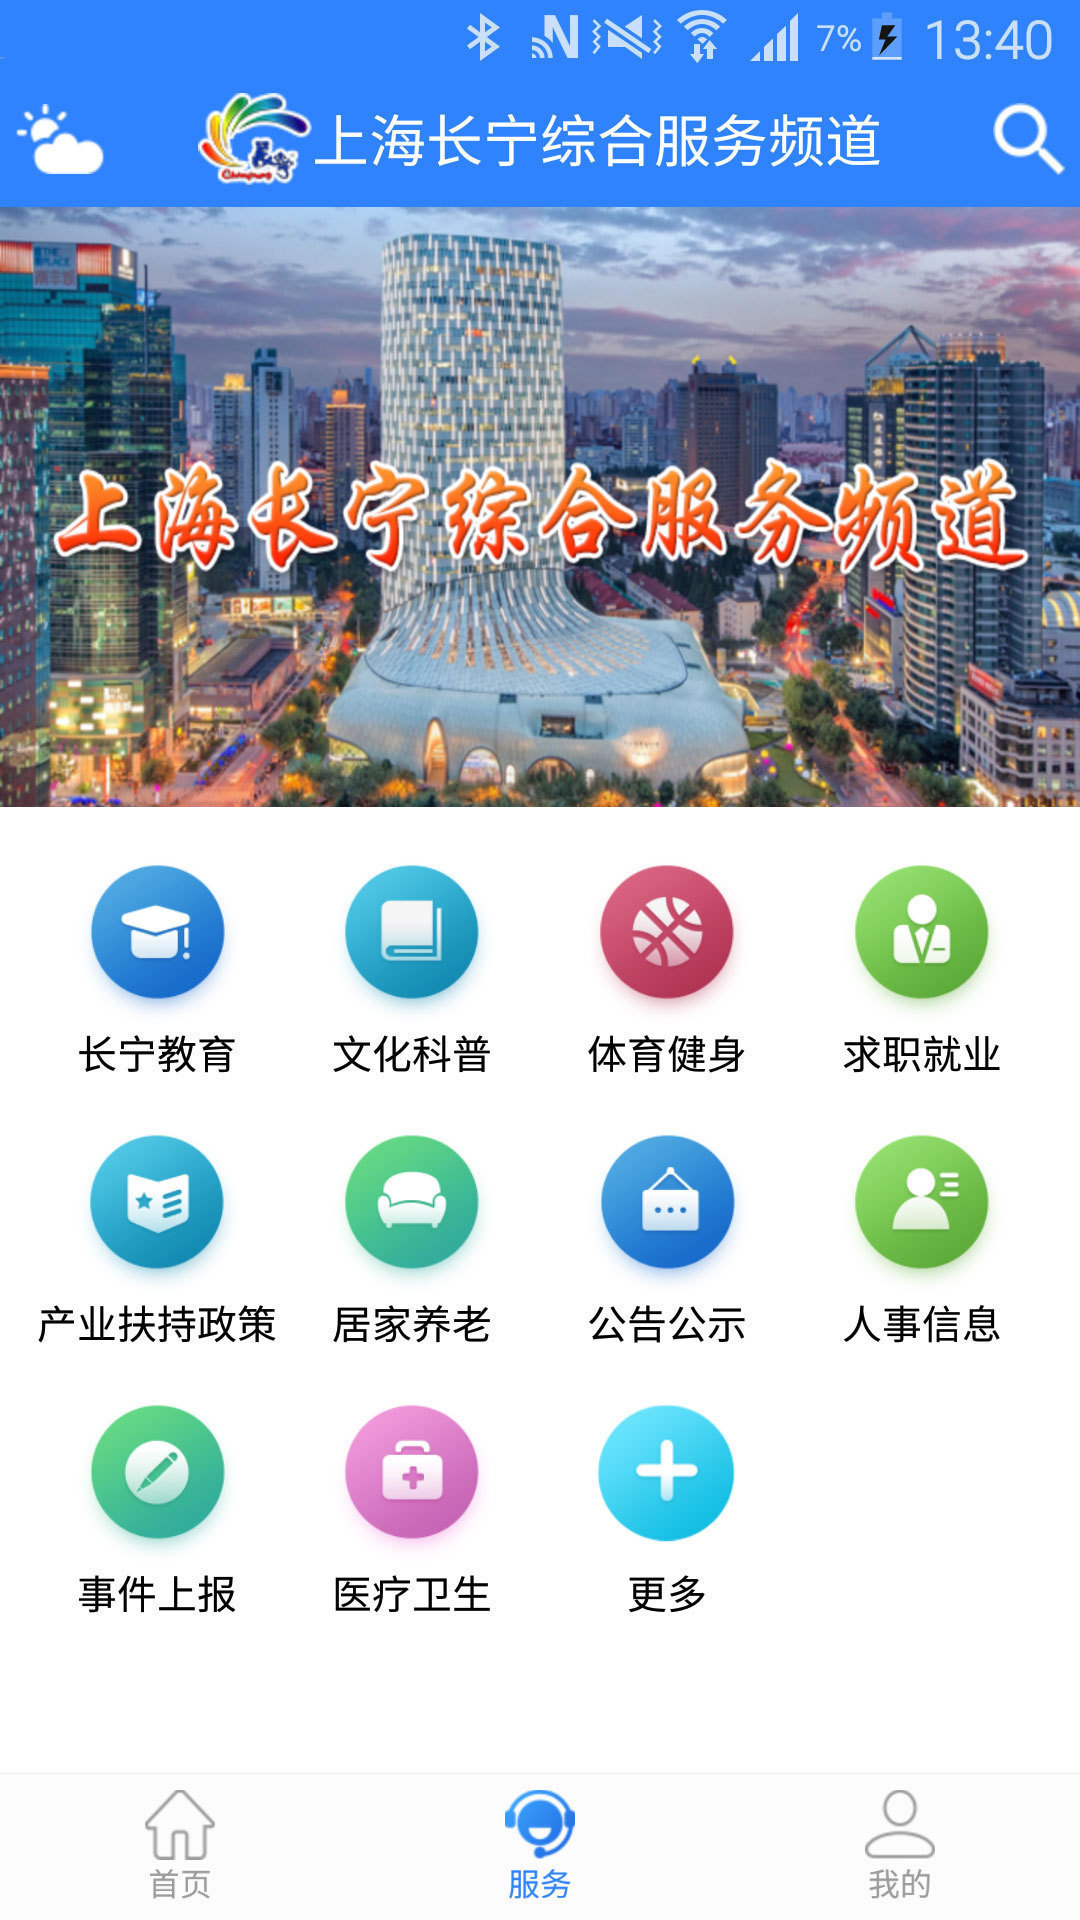 上海长宁APP客户端 6.1.5